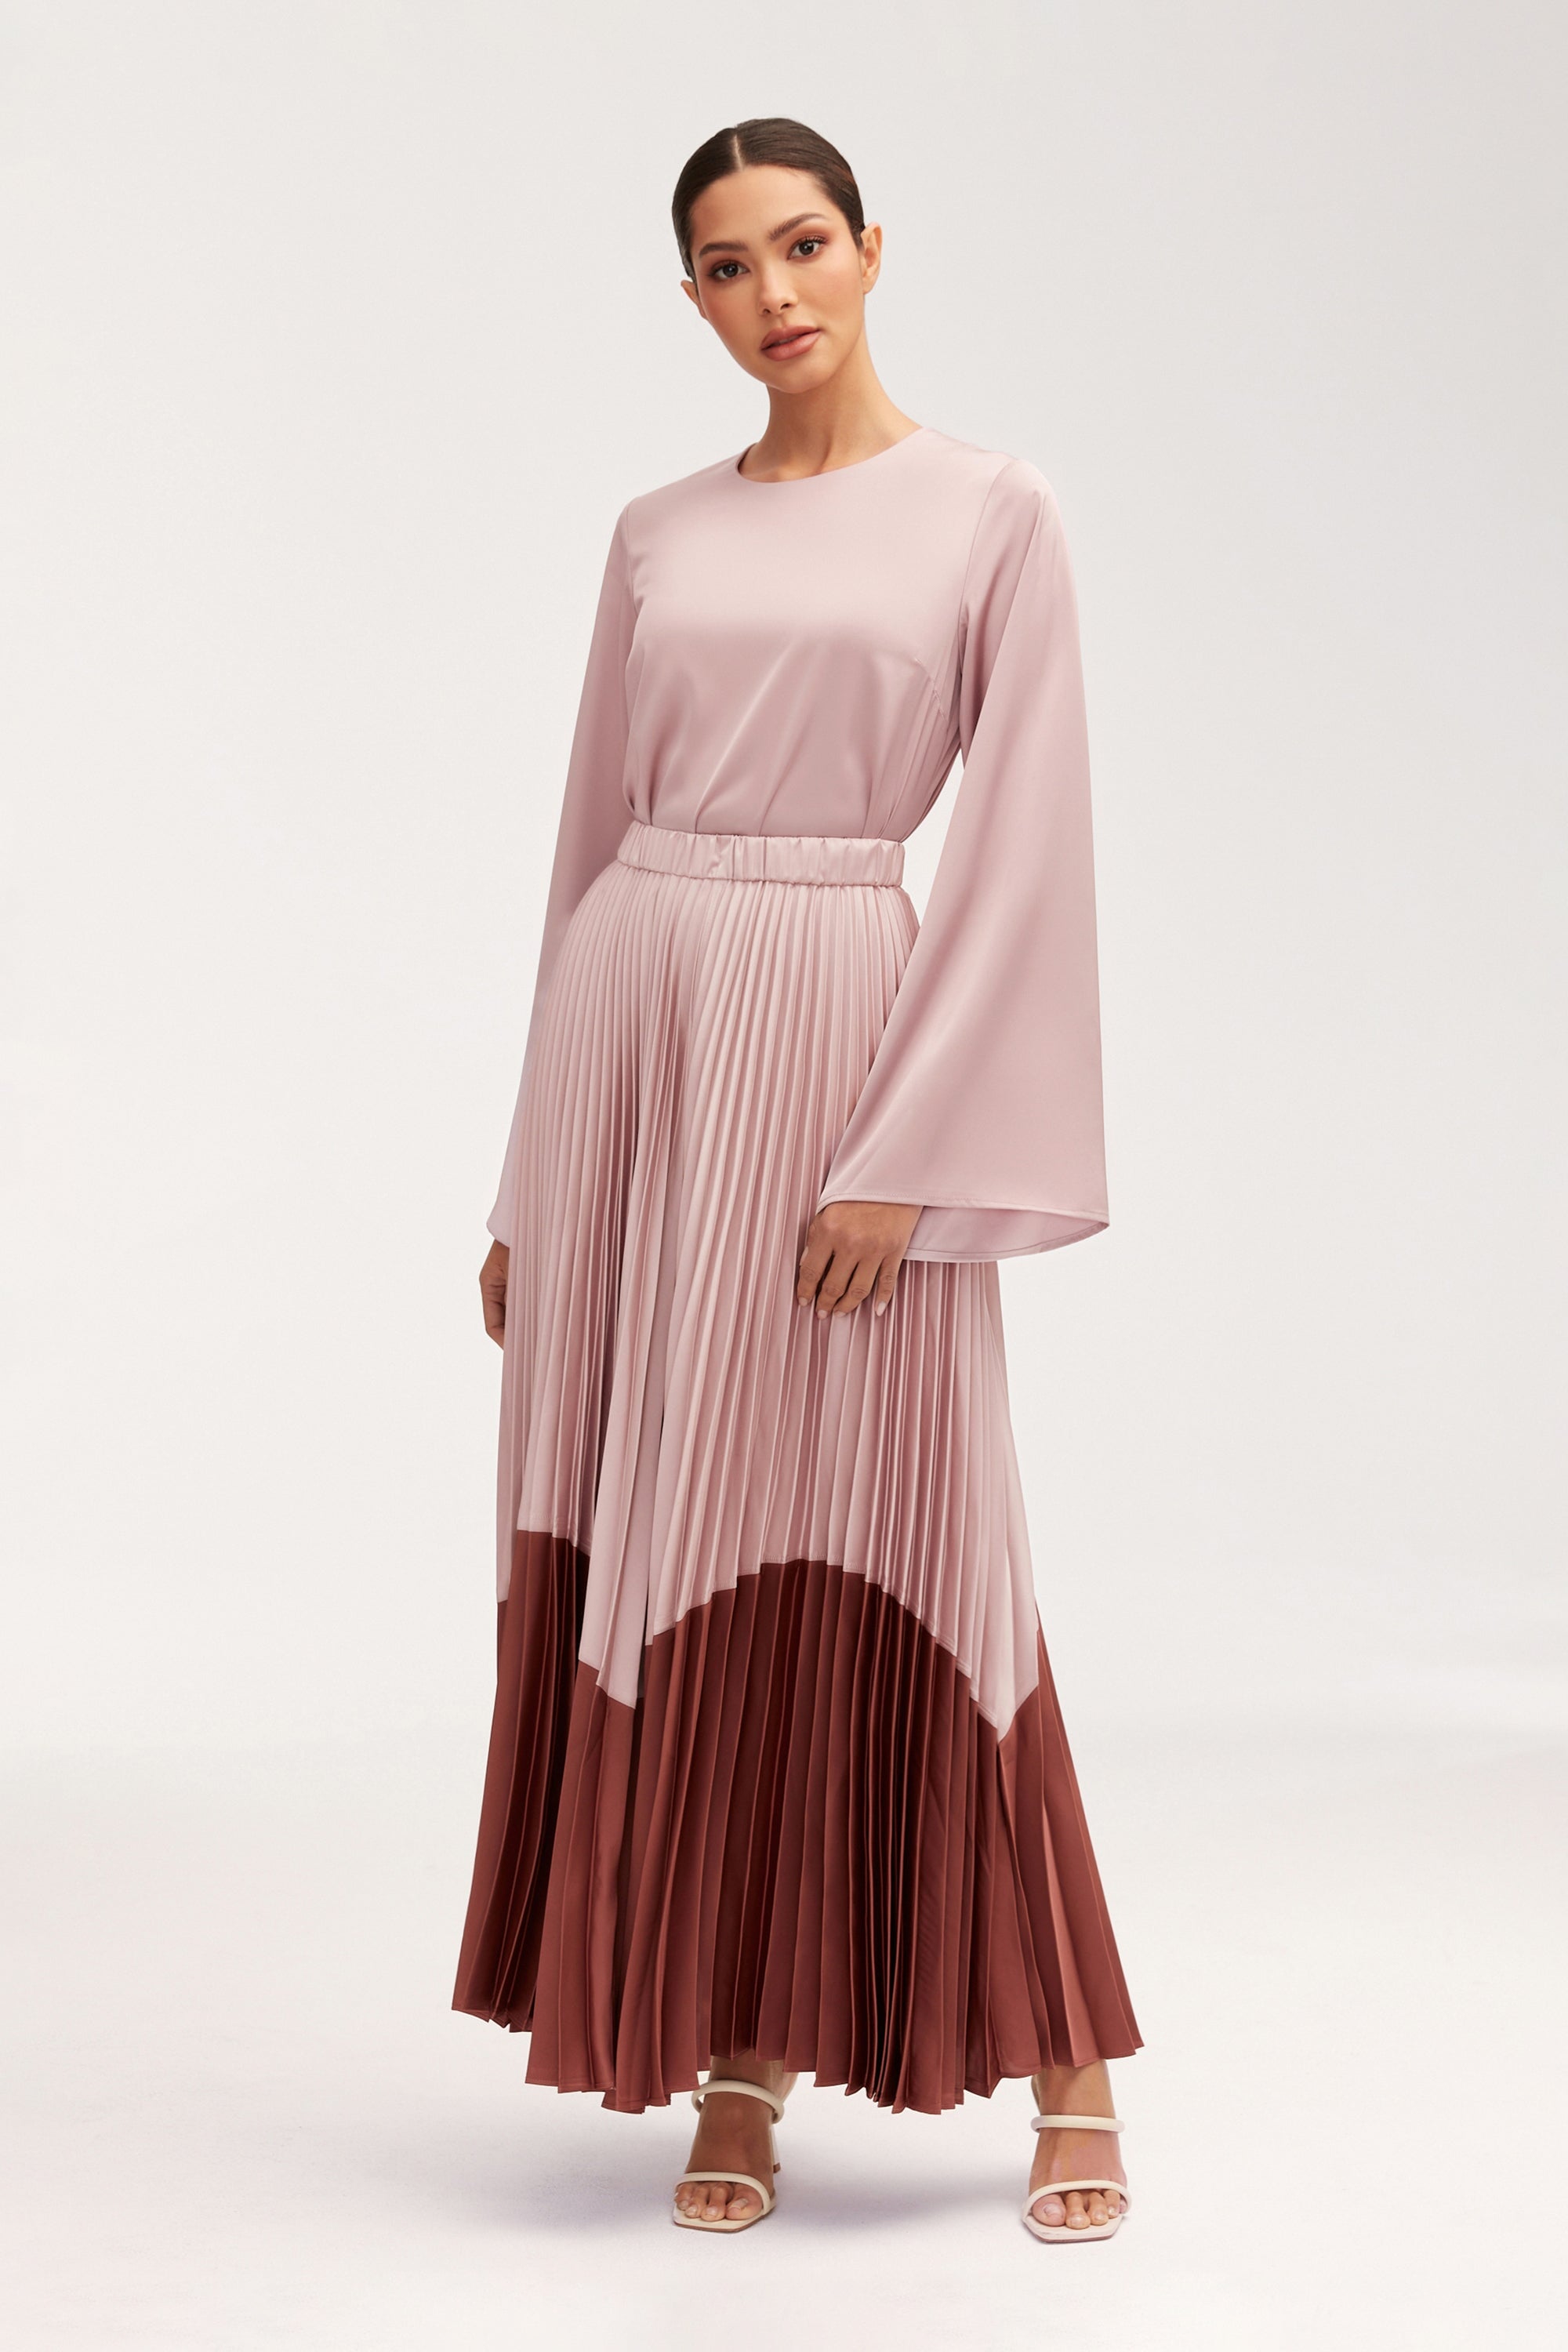 Hayfa Satin Pleated Skirt Clothing Veiled 